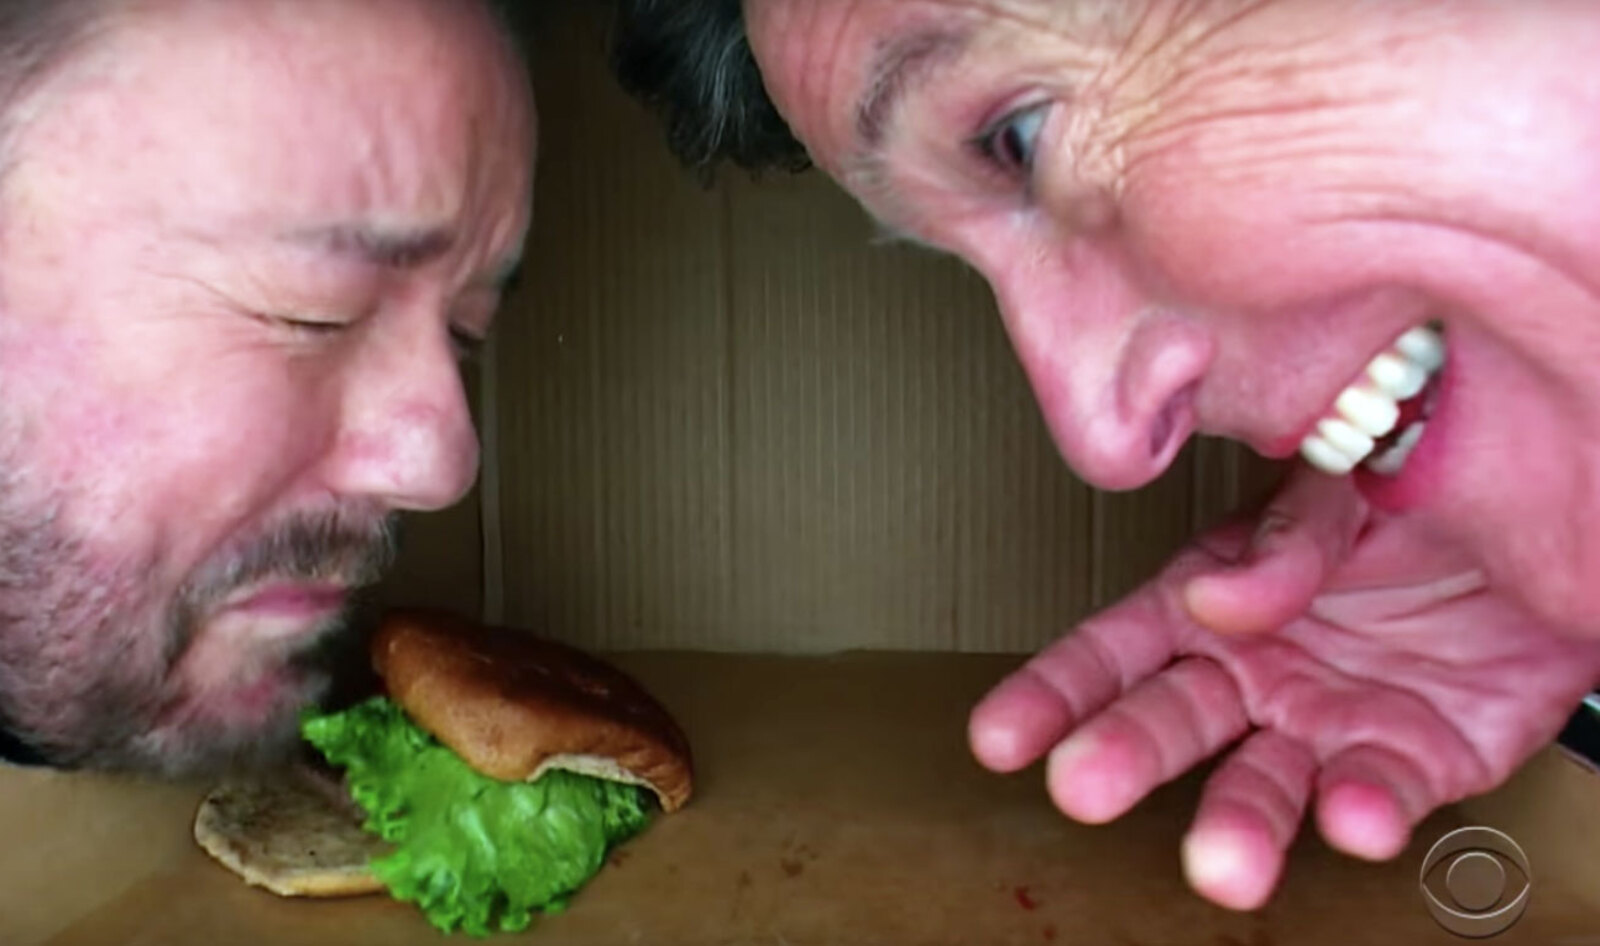 Watch Stephen Colbert Throw a Vegan Burger at Ricky Gervais Inside a Box